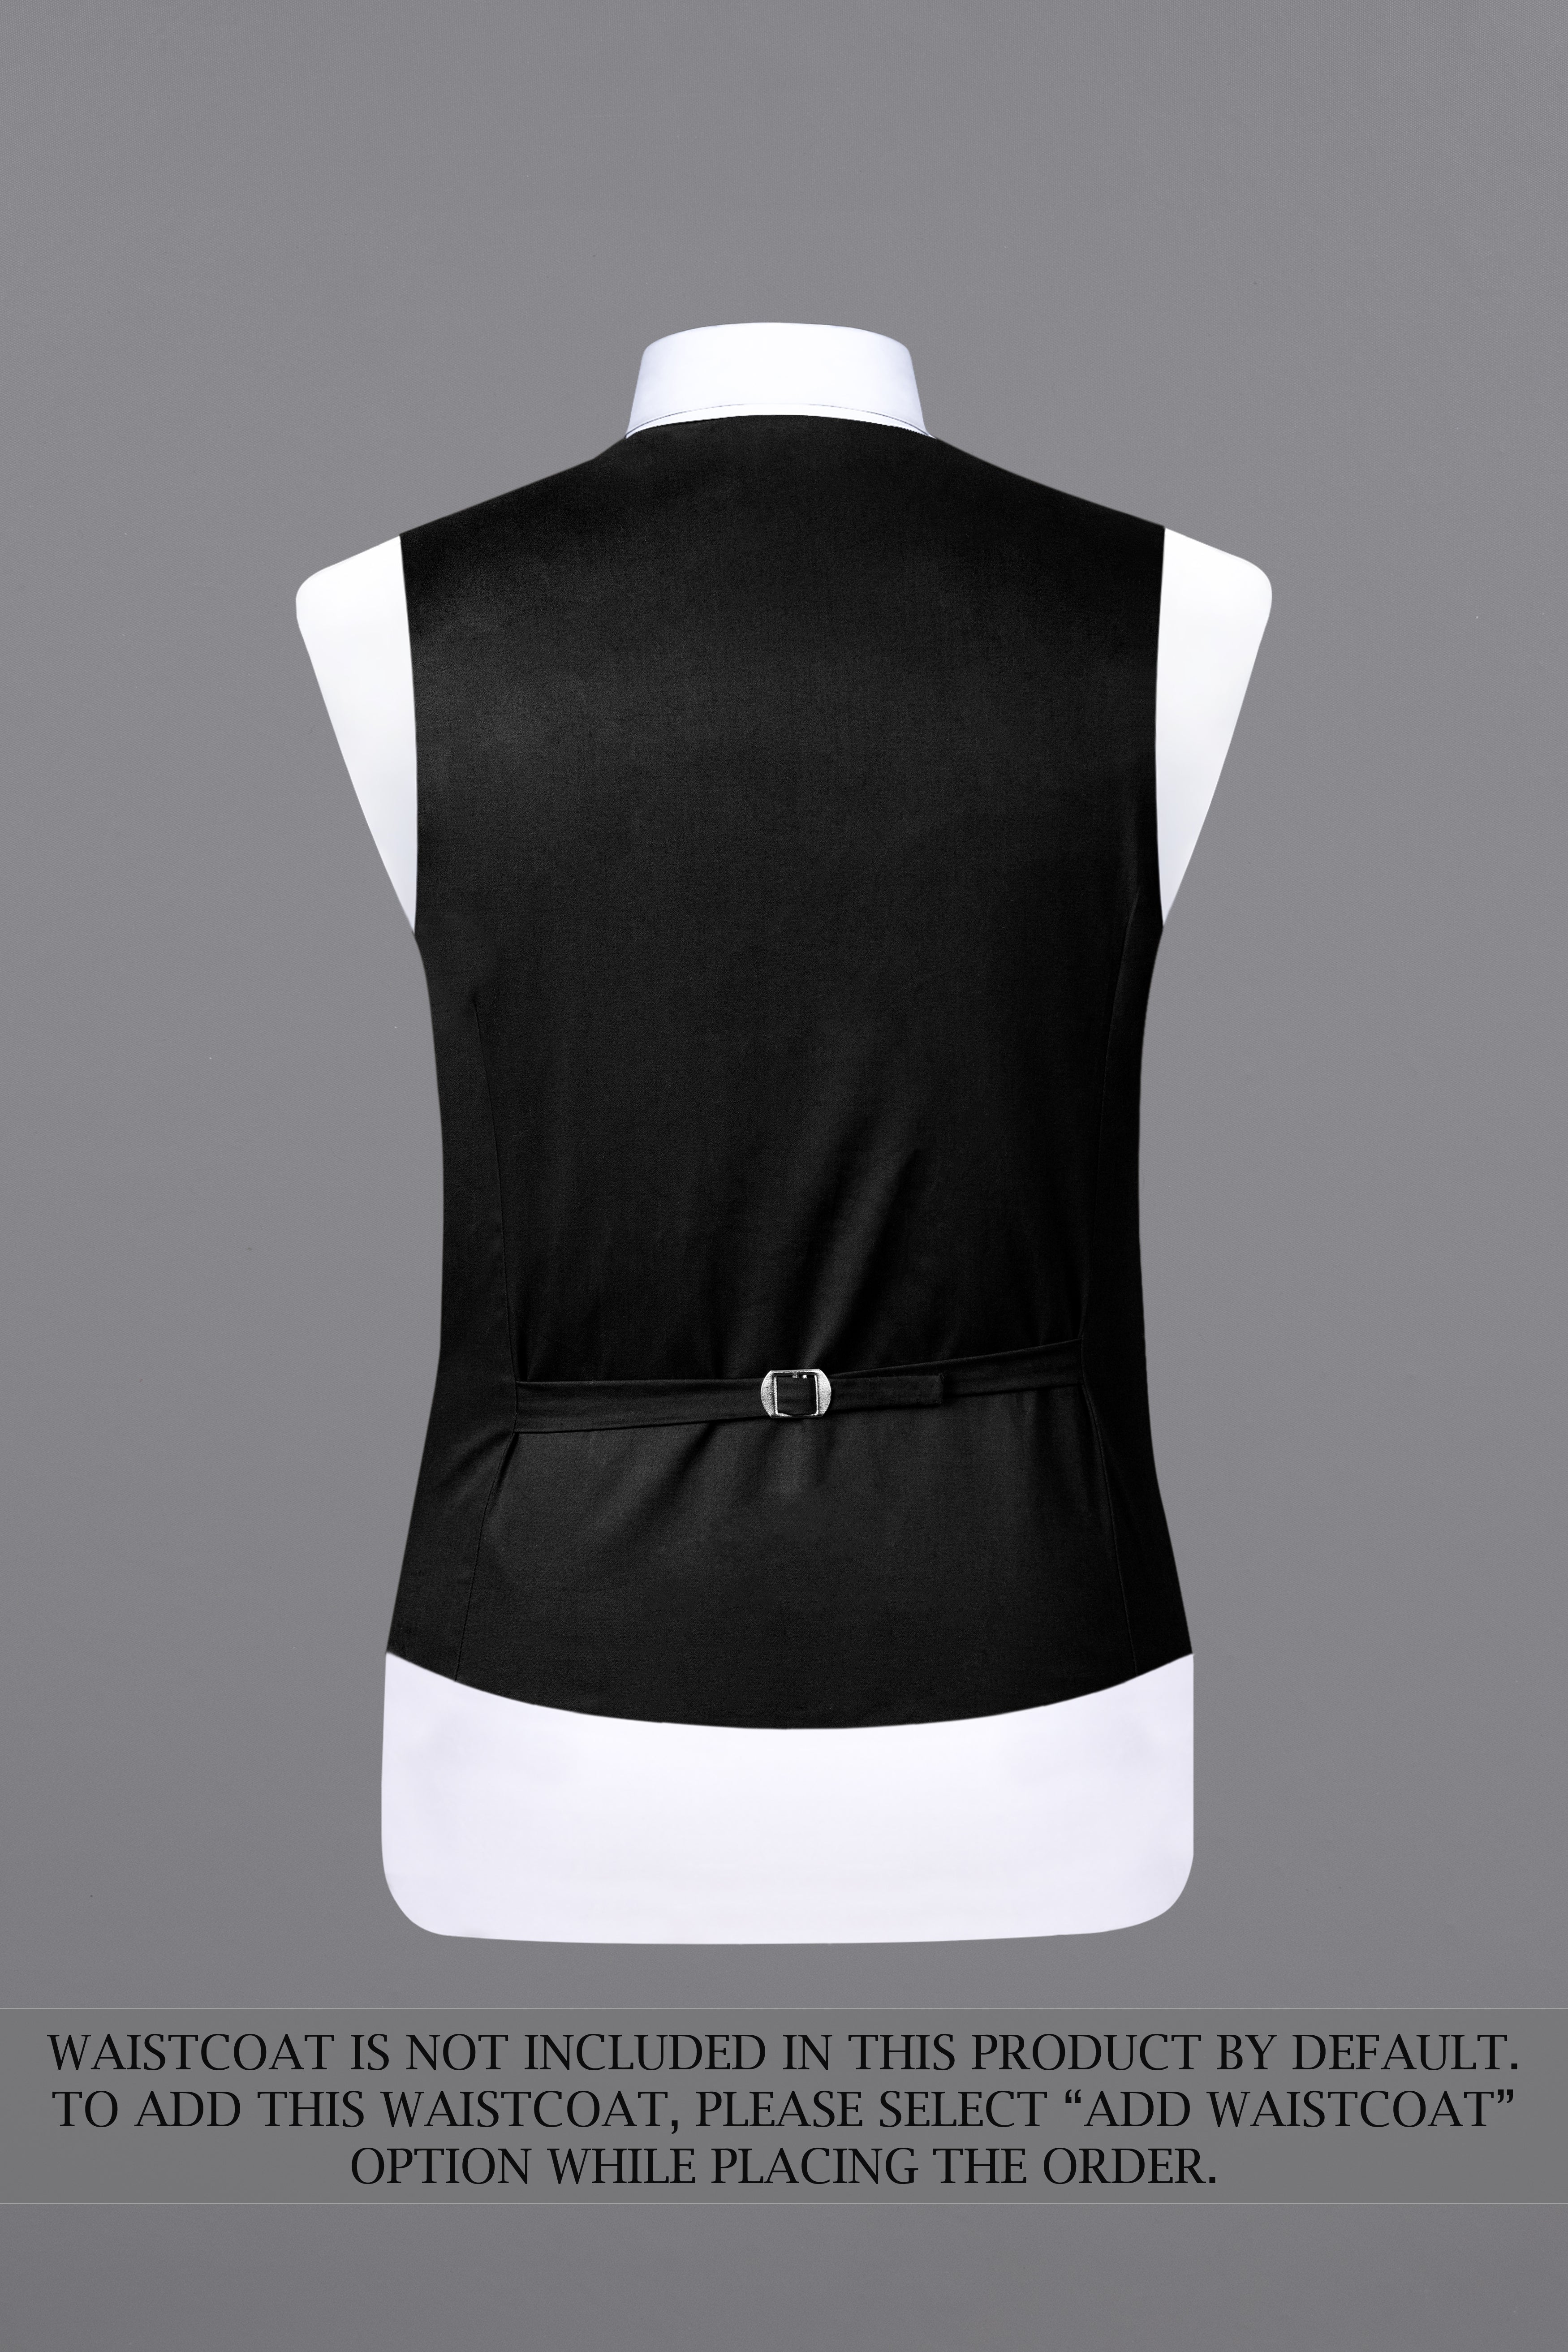 Rich Black Solid Stretchable Premium Cotton Traveler Suit